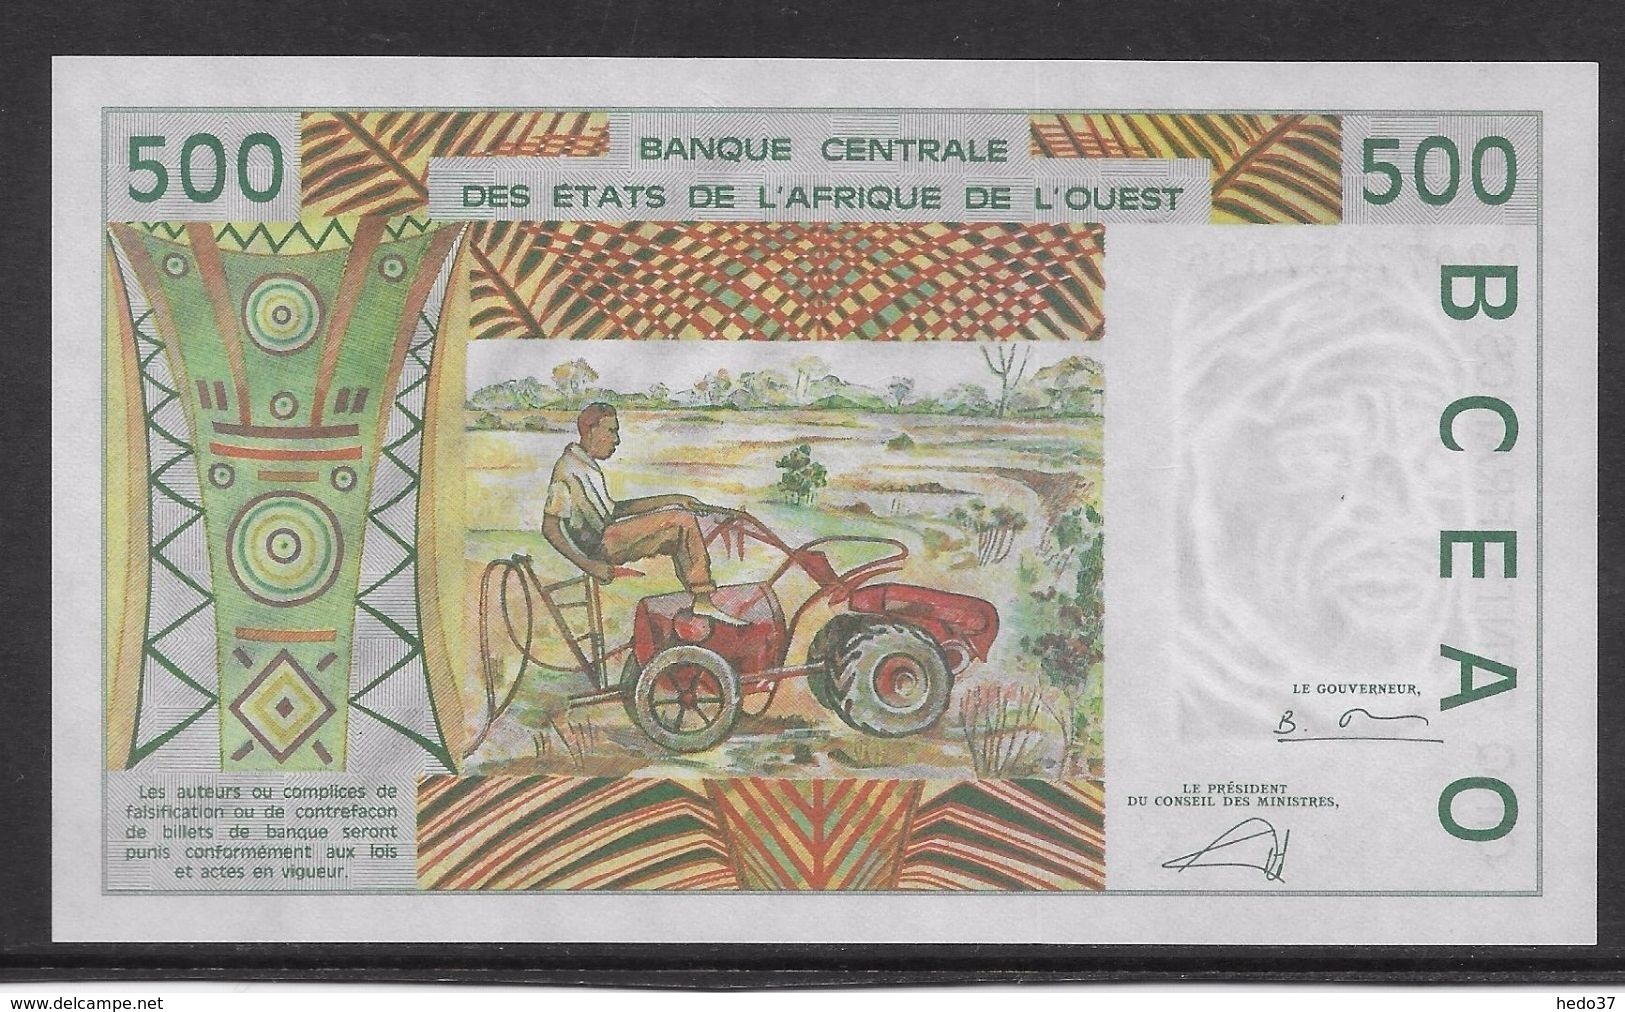 Sénégal - 500 Francs 2002 - Pick N°710Km - Neuf - Senegal